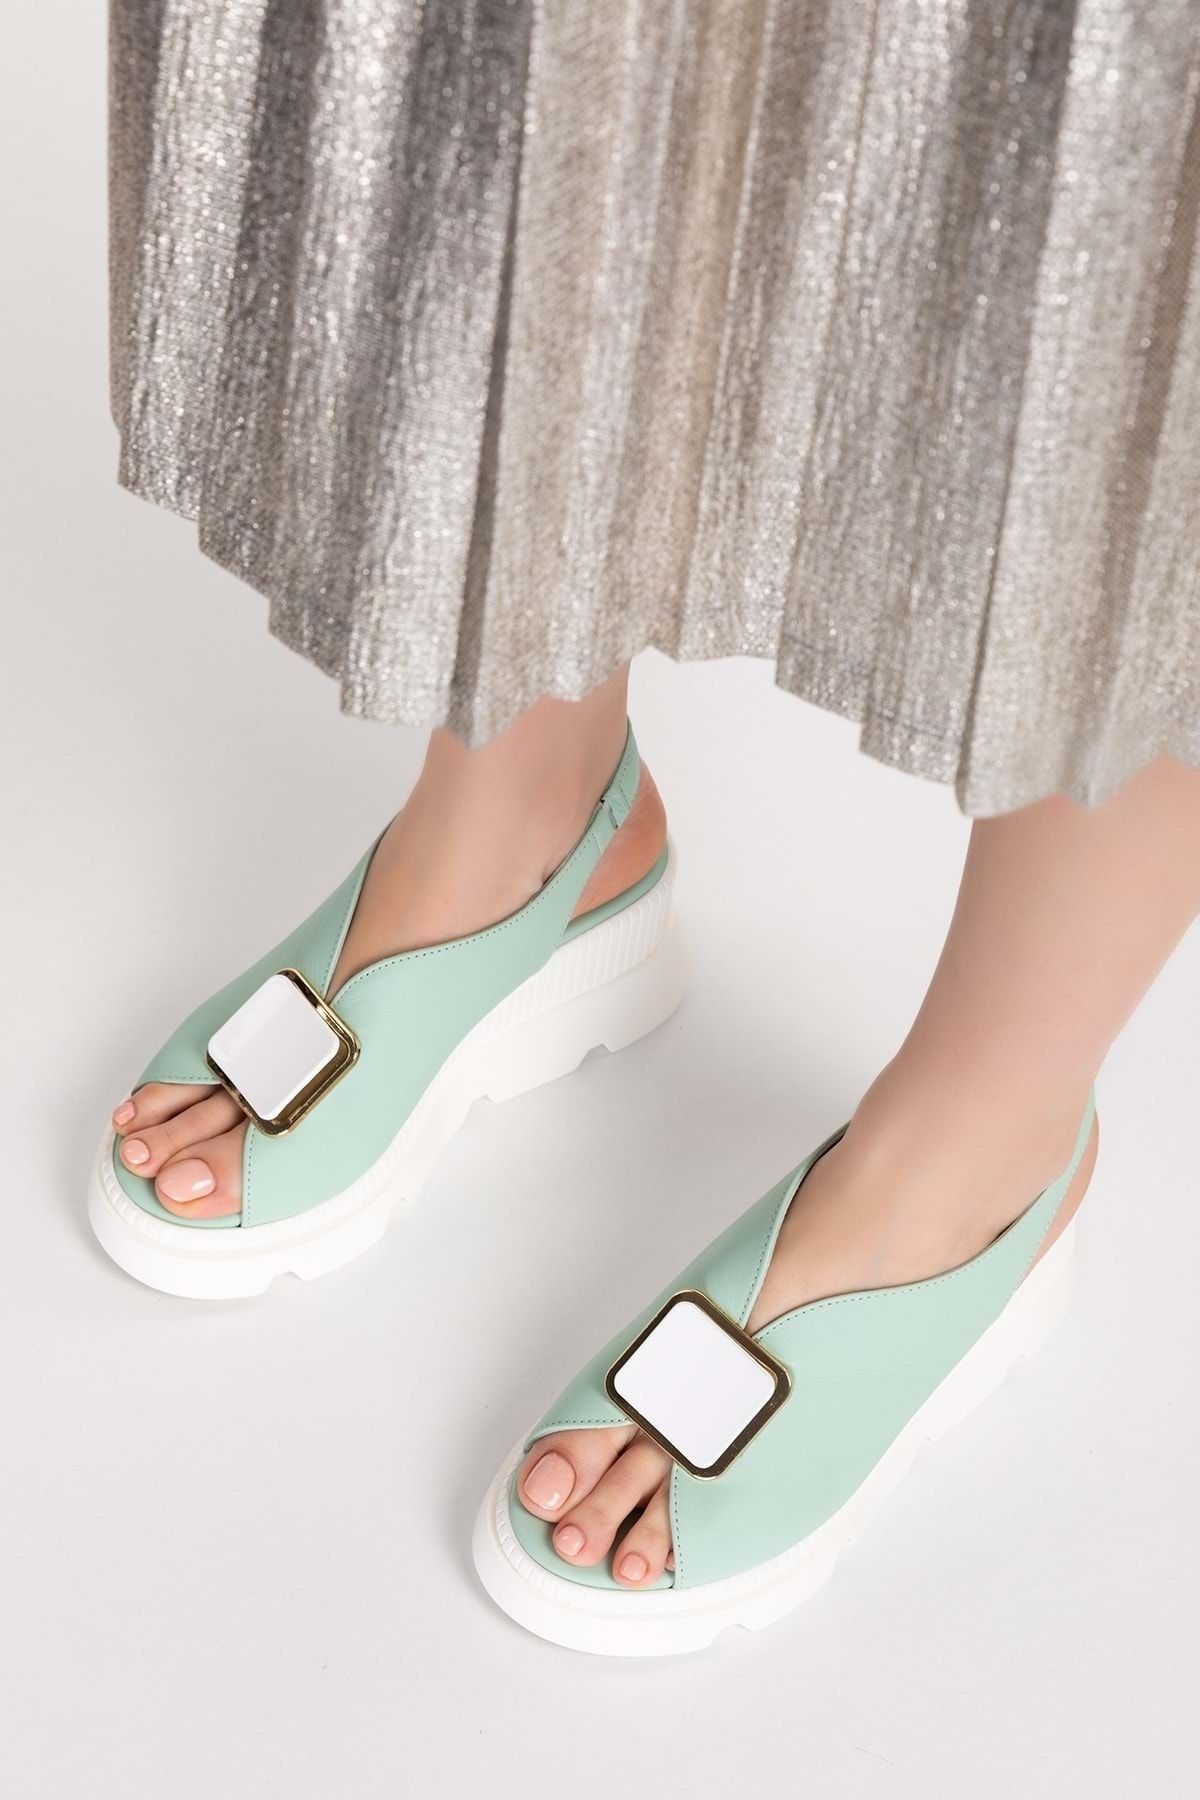 Gondol Kadın Hakiki Deri Dolgu Topuklu Platformlu Sandalet Şk.5170 - Mint - 40